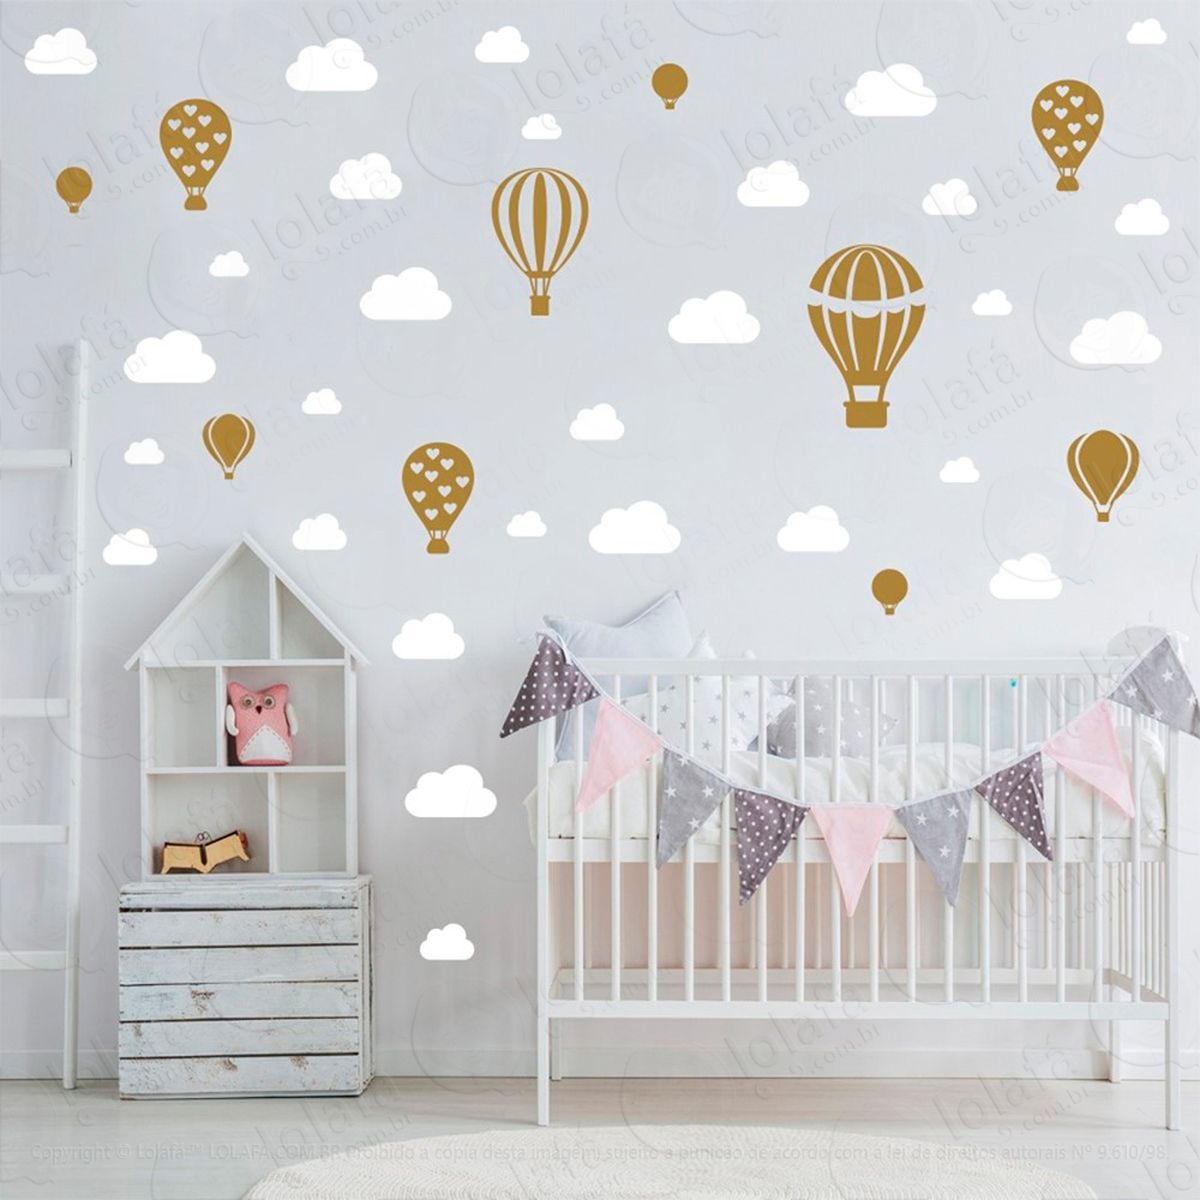 adesivos balões e nuvens 42 peças adesivos para quarto de bebê infantil - mod:814